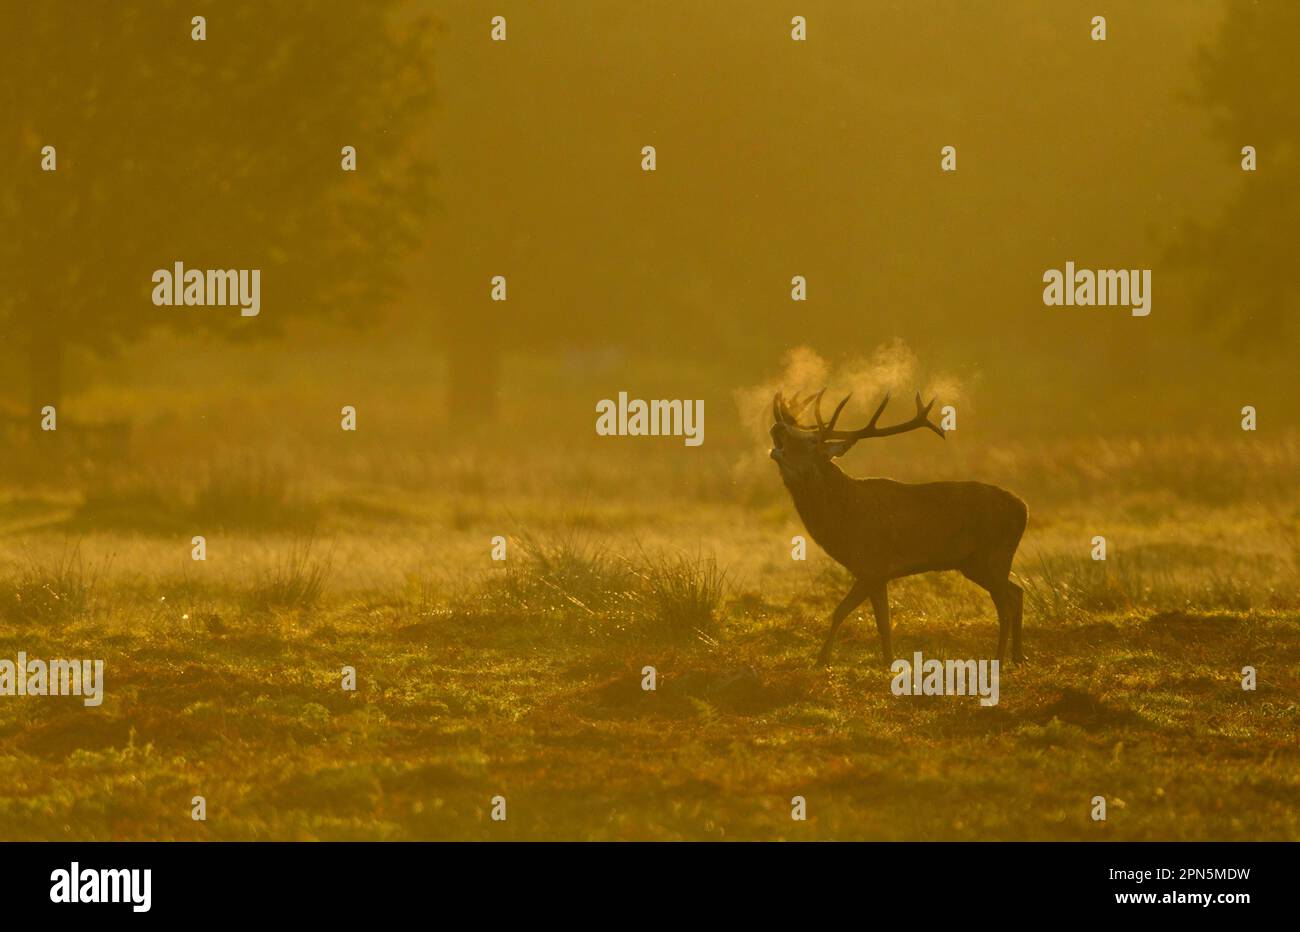 Cervo rosso (Cervus elaphus), stag, ruggito durante il soldo, con respiro condensante all'alba, Bradgate Park, Leicestershire, Inghilterra, Regno Unito Foto Stock